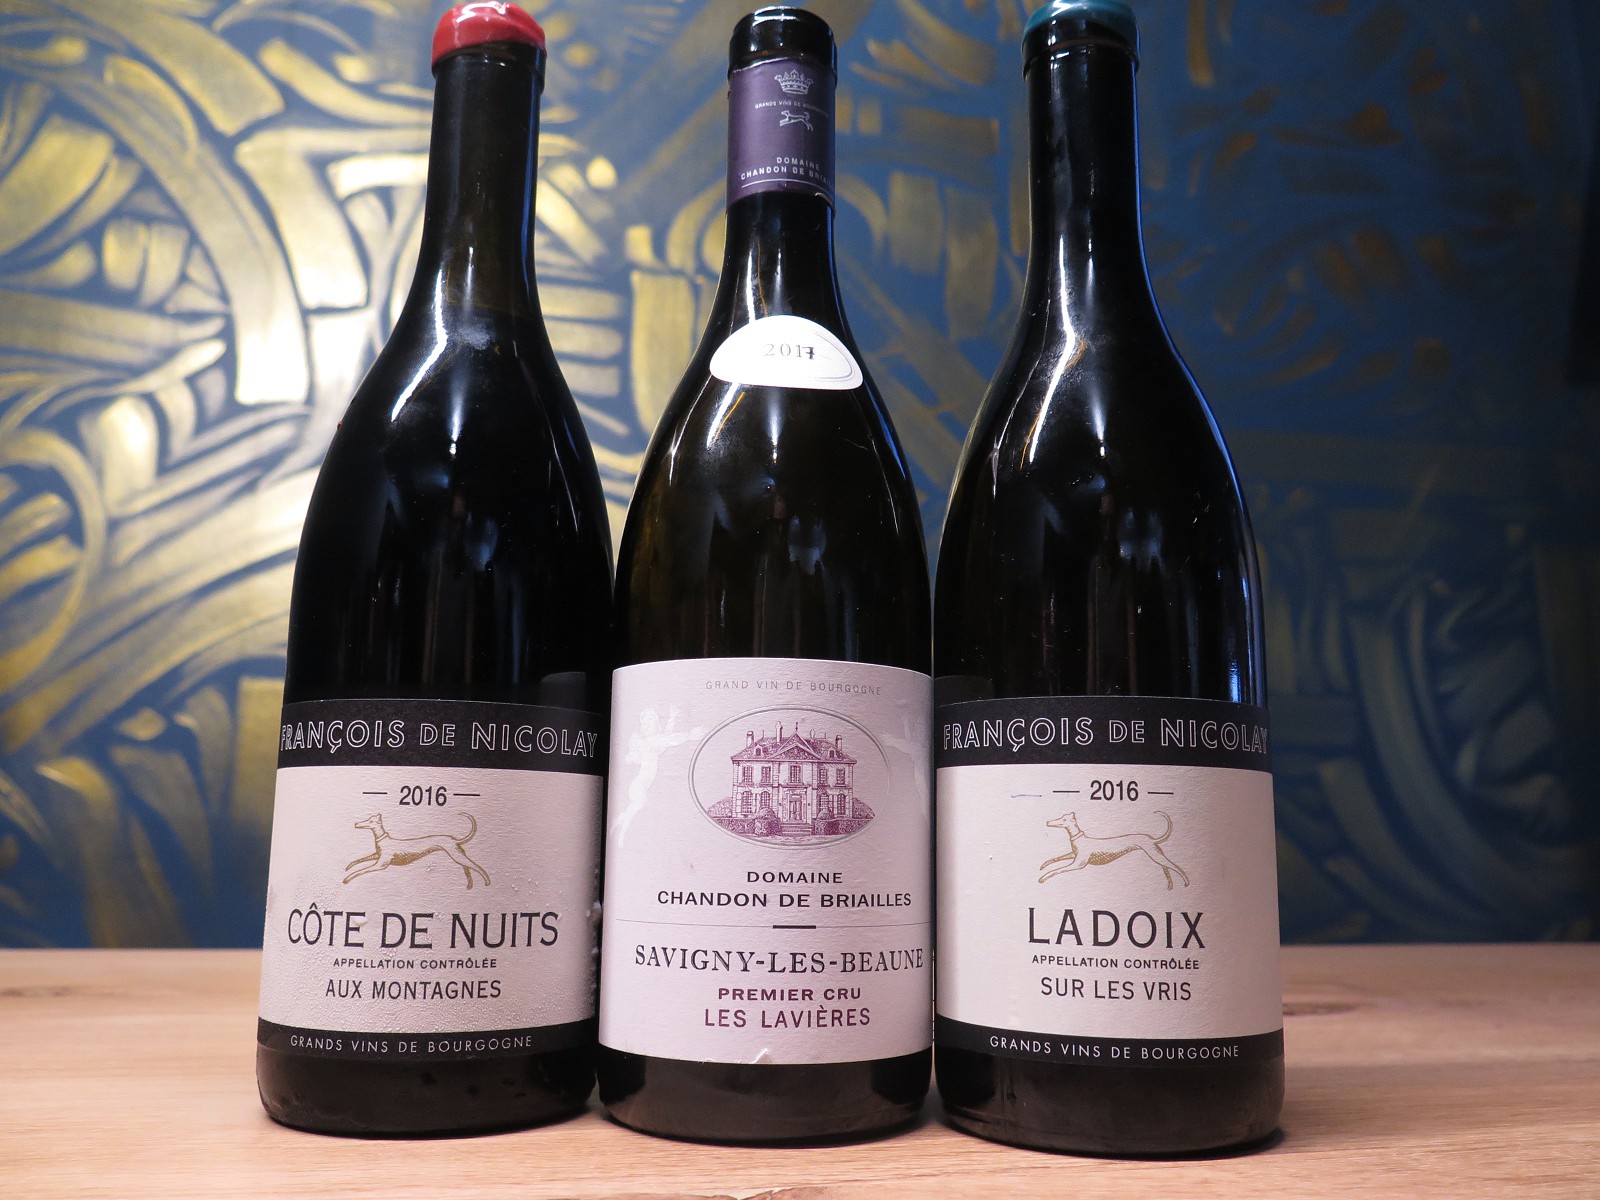 Os três vinhos de François de Nicolay